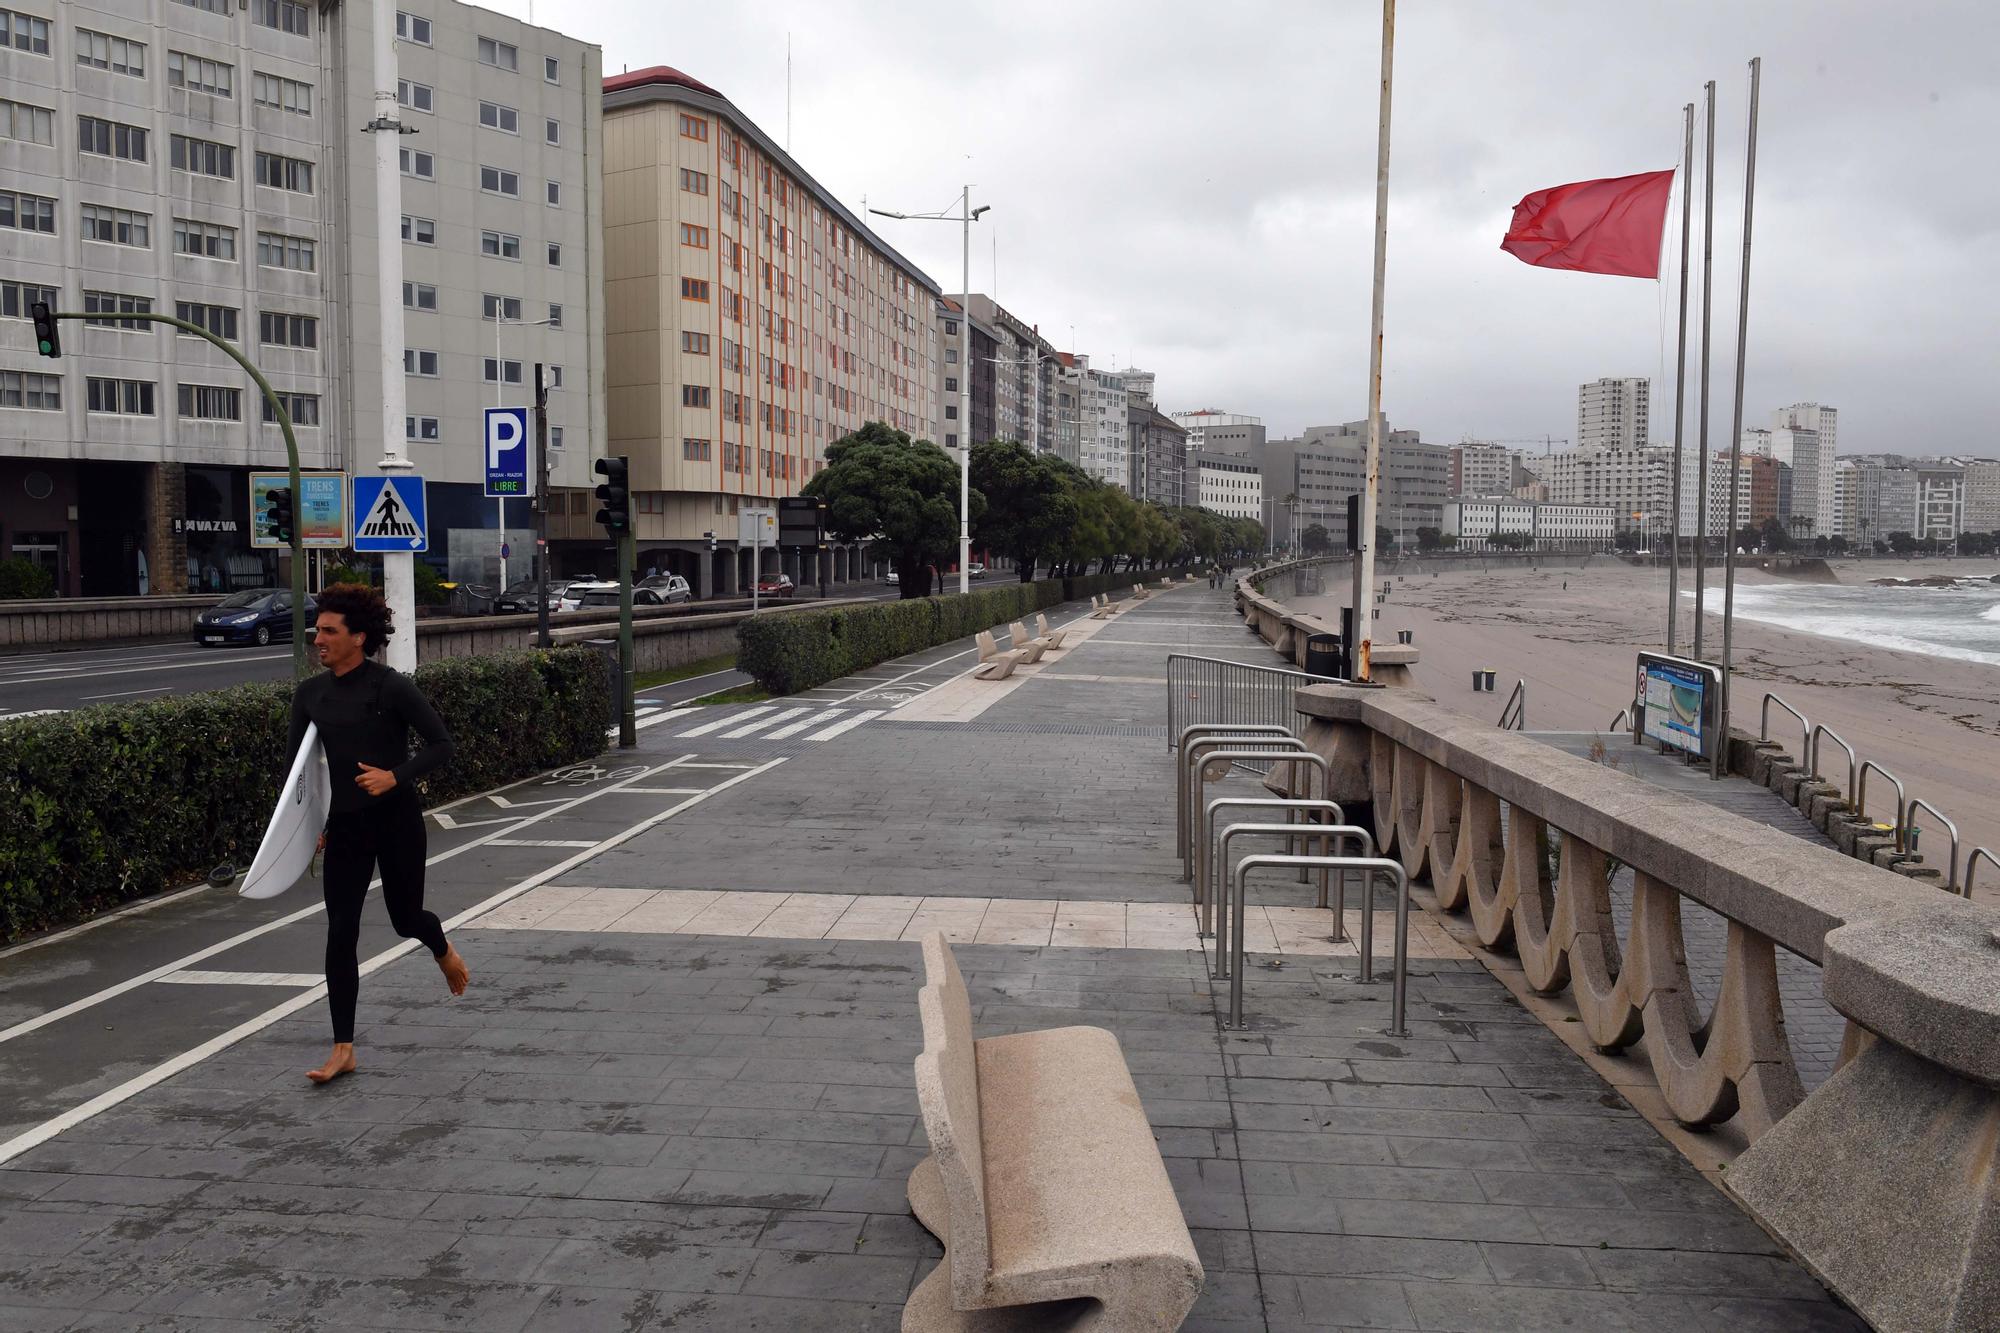 Minitemporal en A Coruña en pleno mes de junio